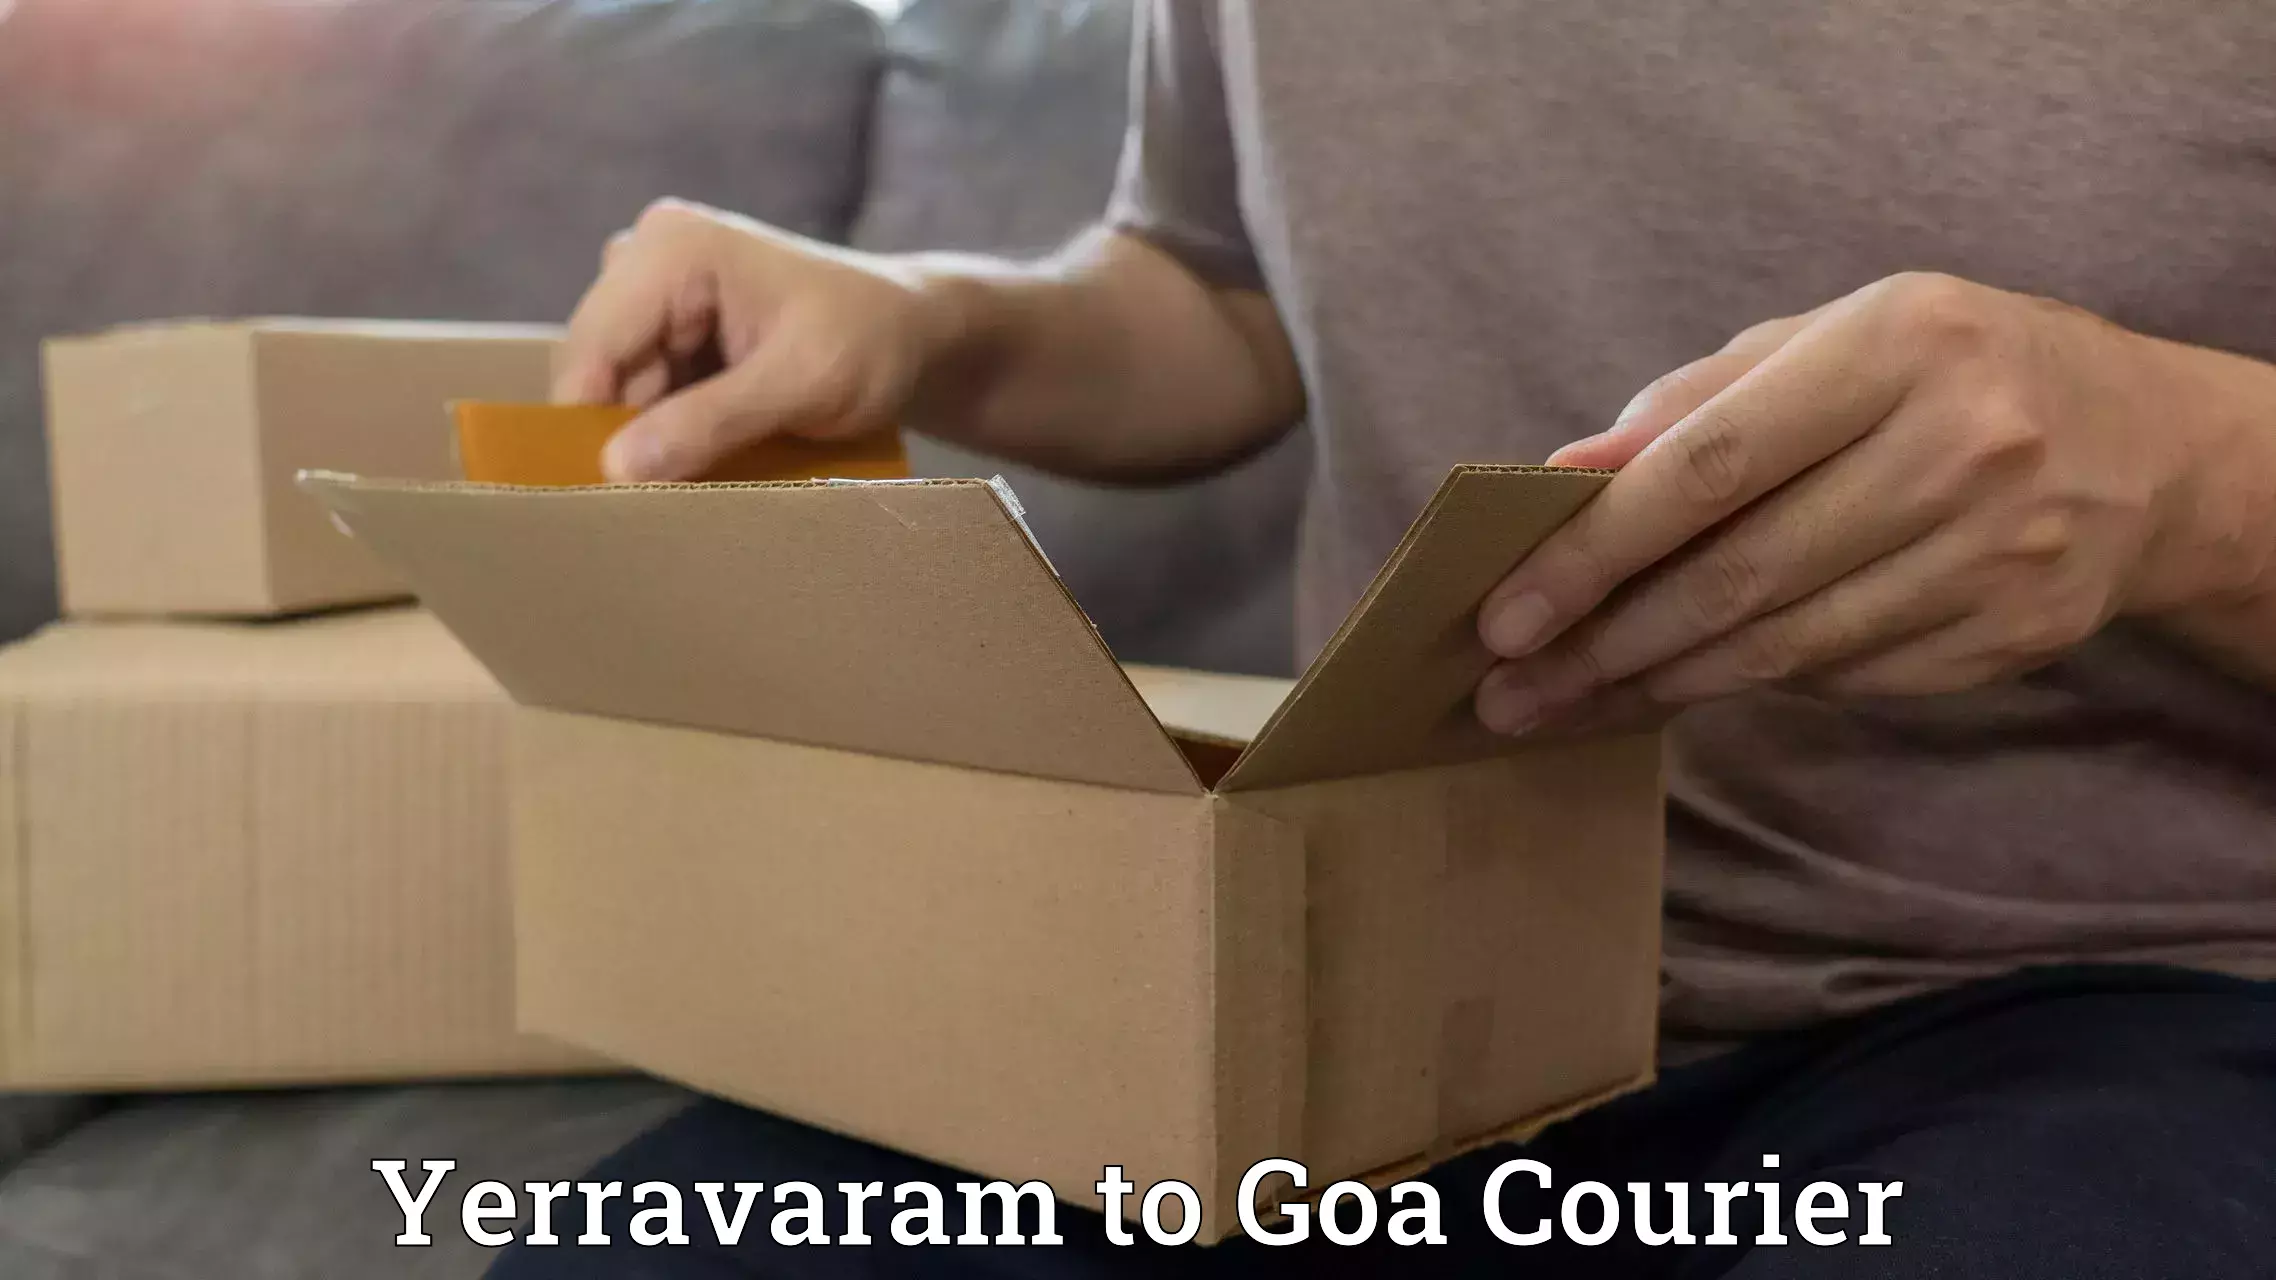 Custom courier packaging Yerravaram to Ponda